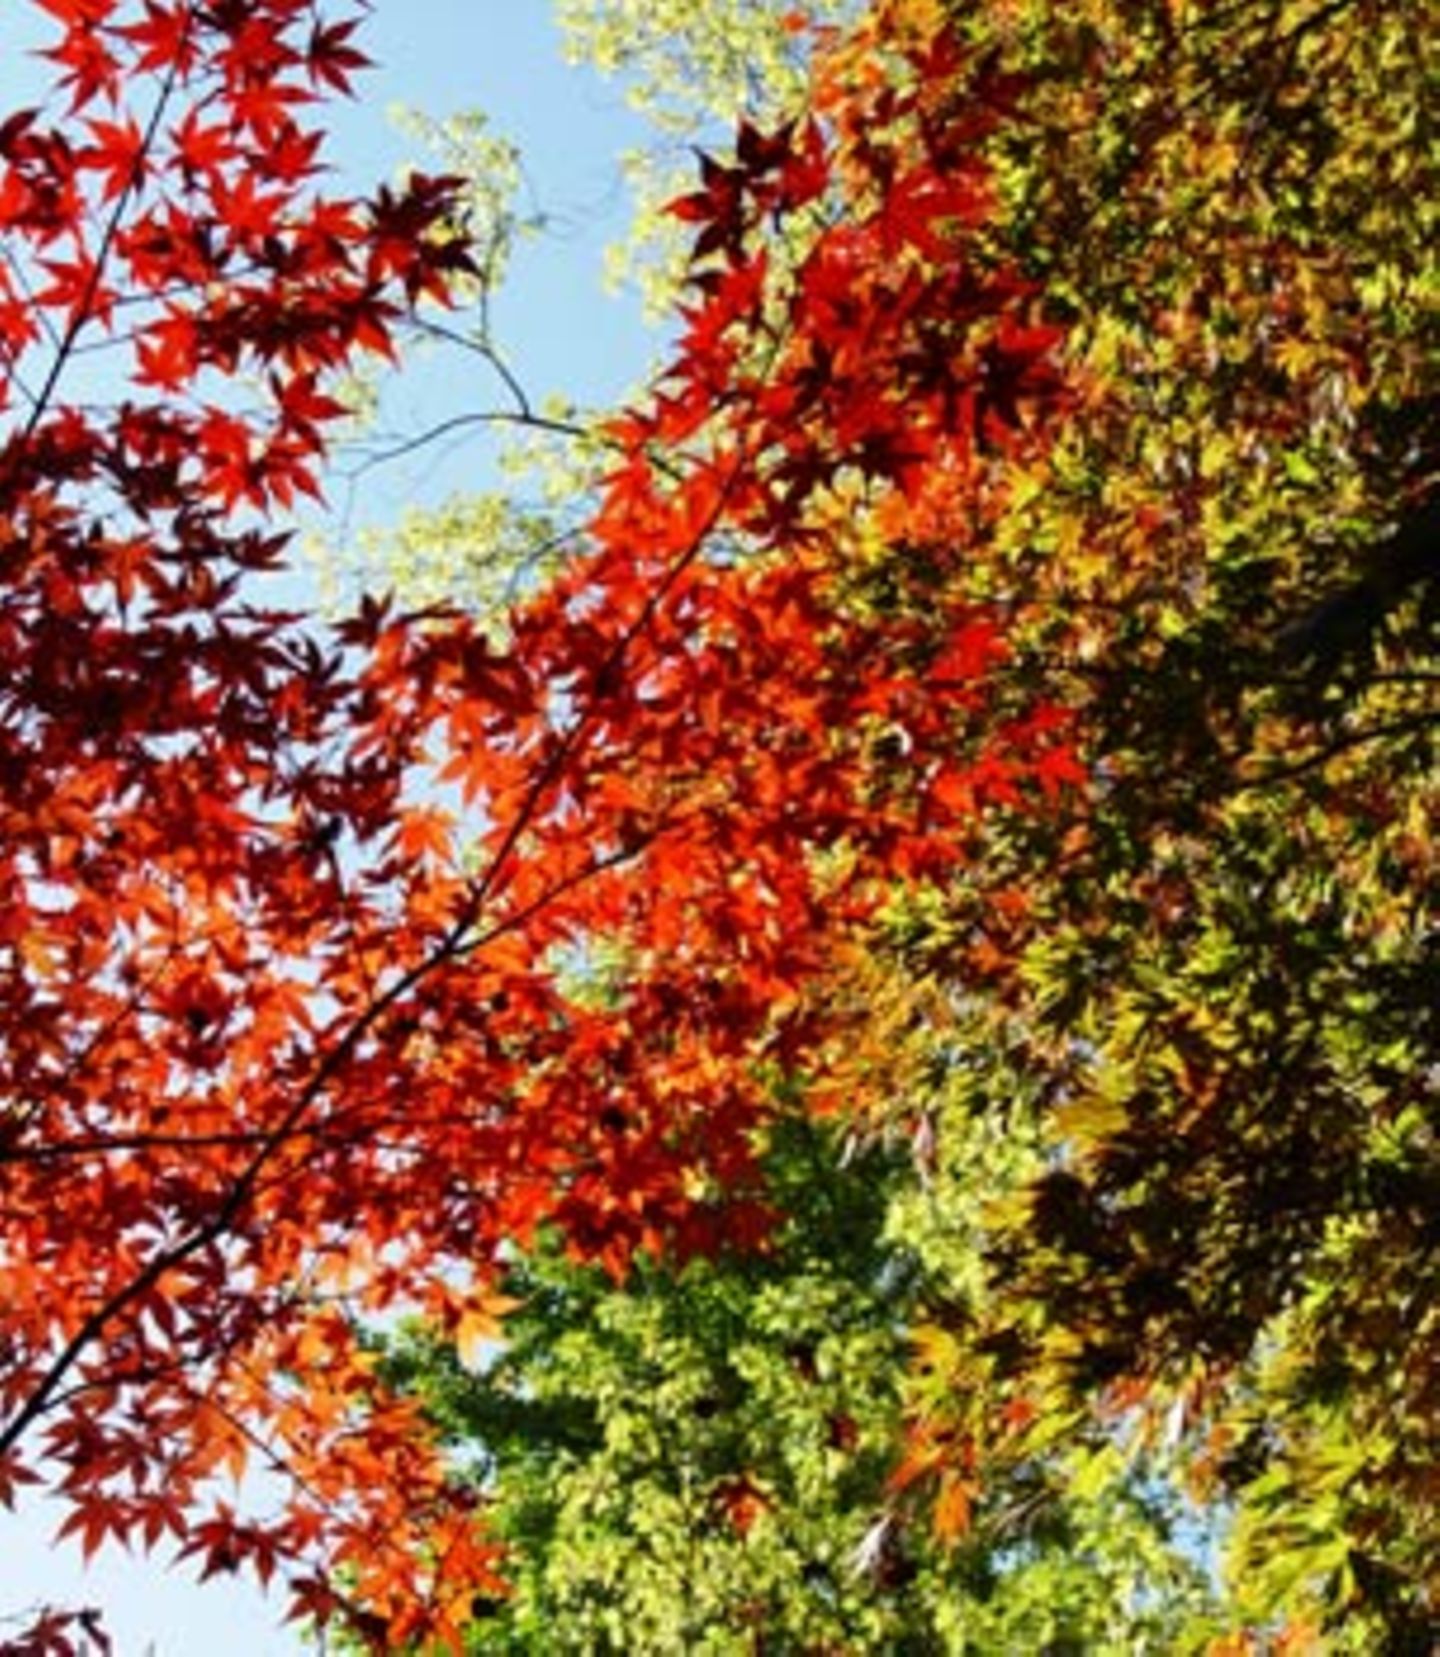 Herbstzauber: Fächerahorn (Acer palmatum)